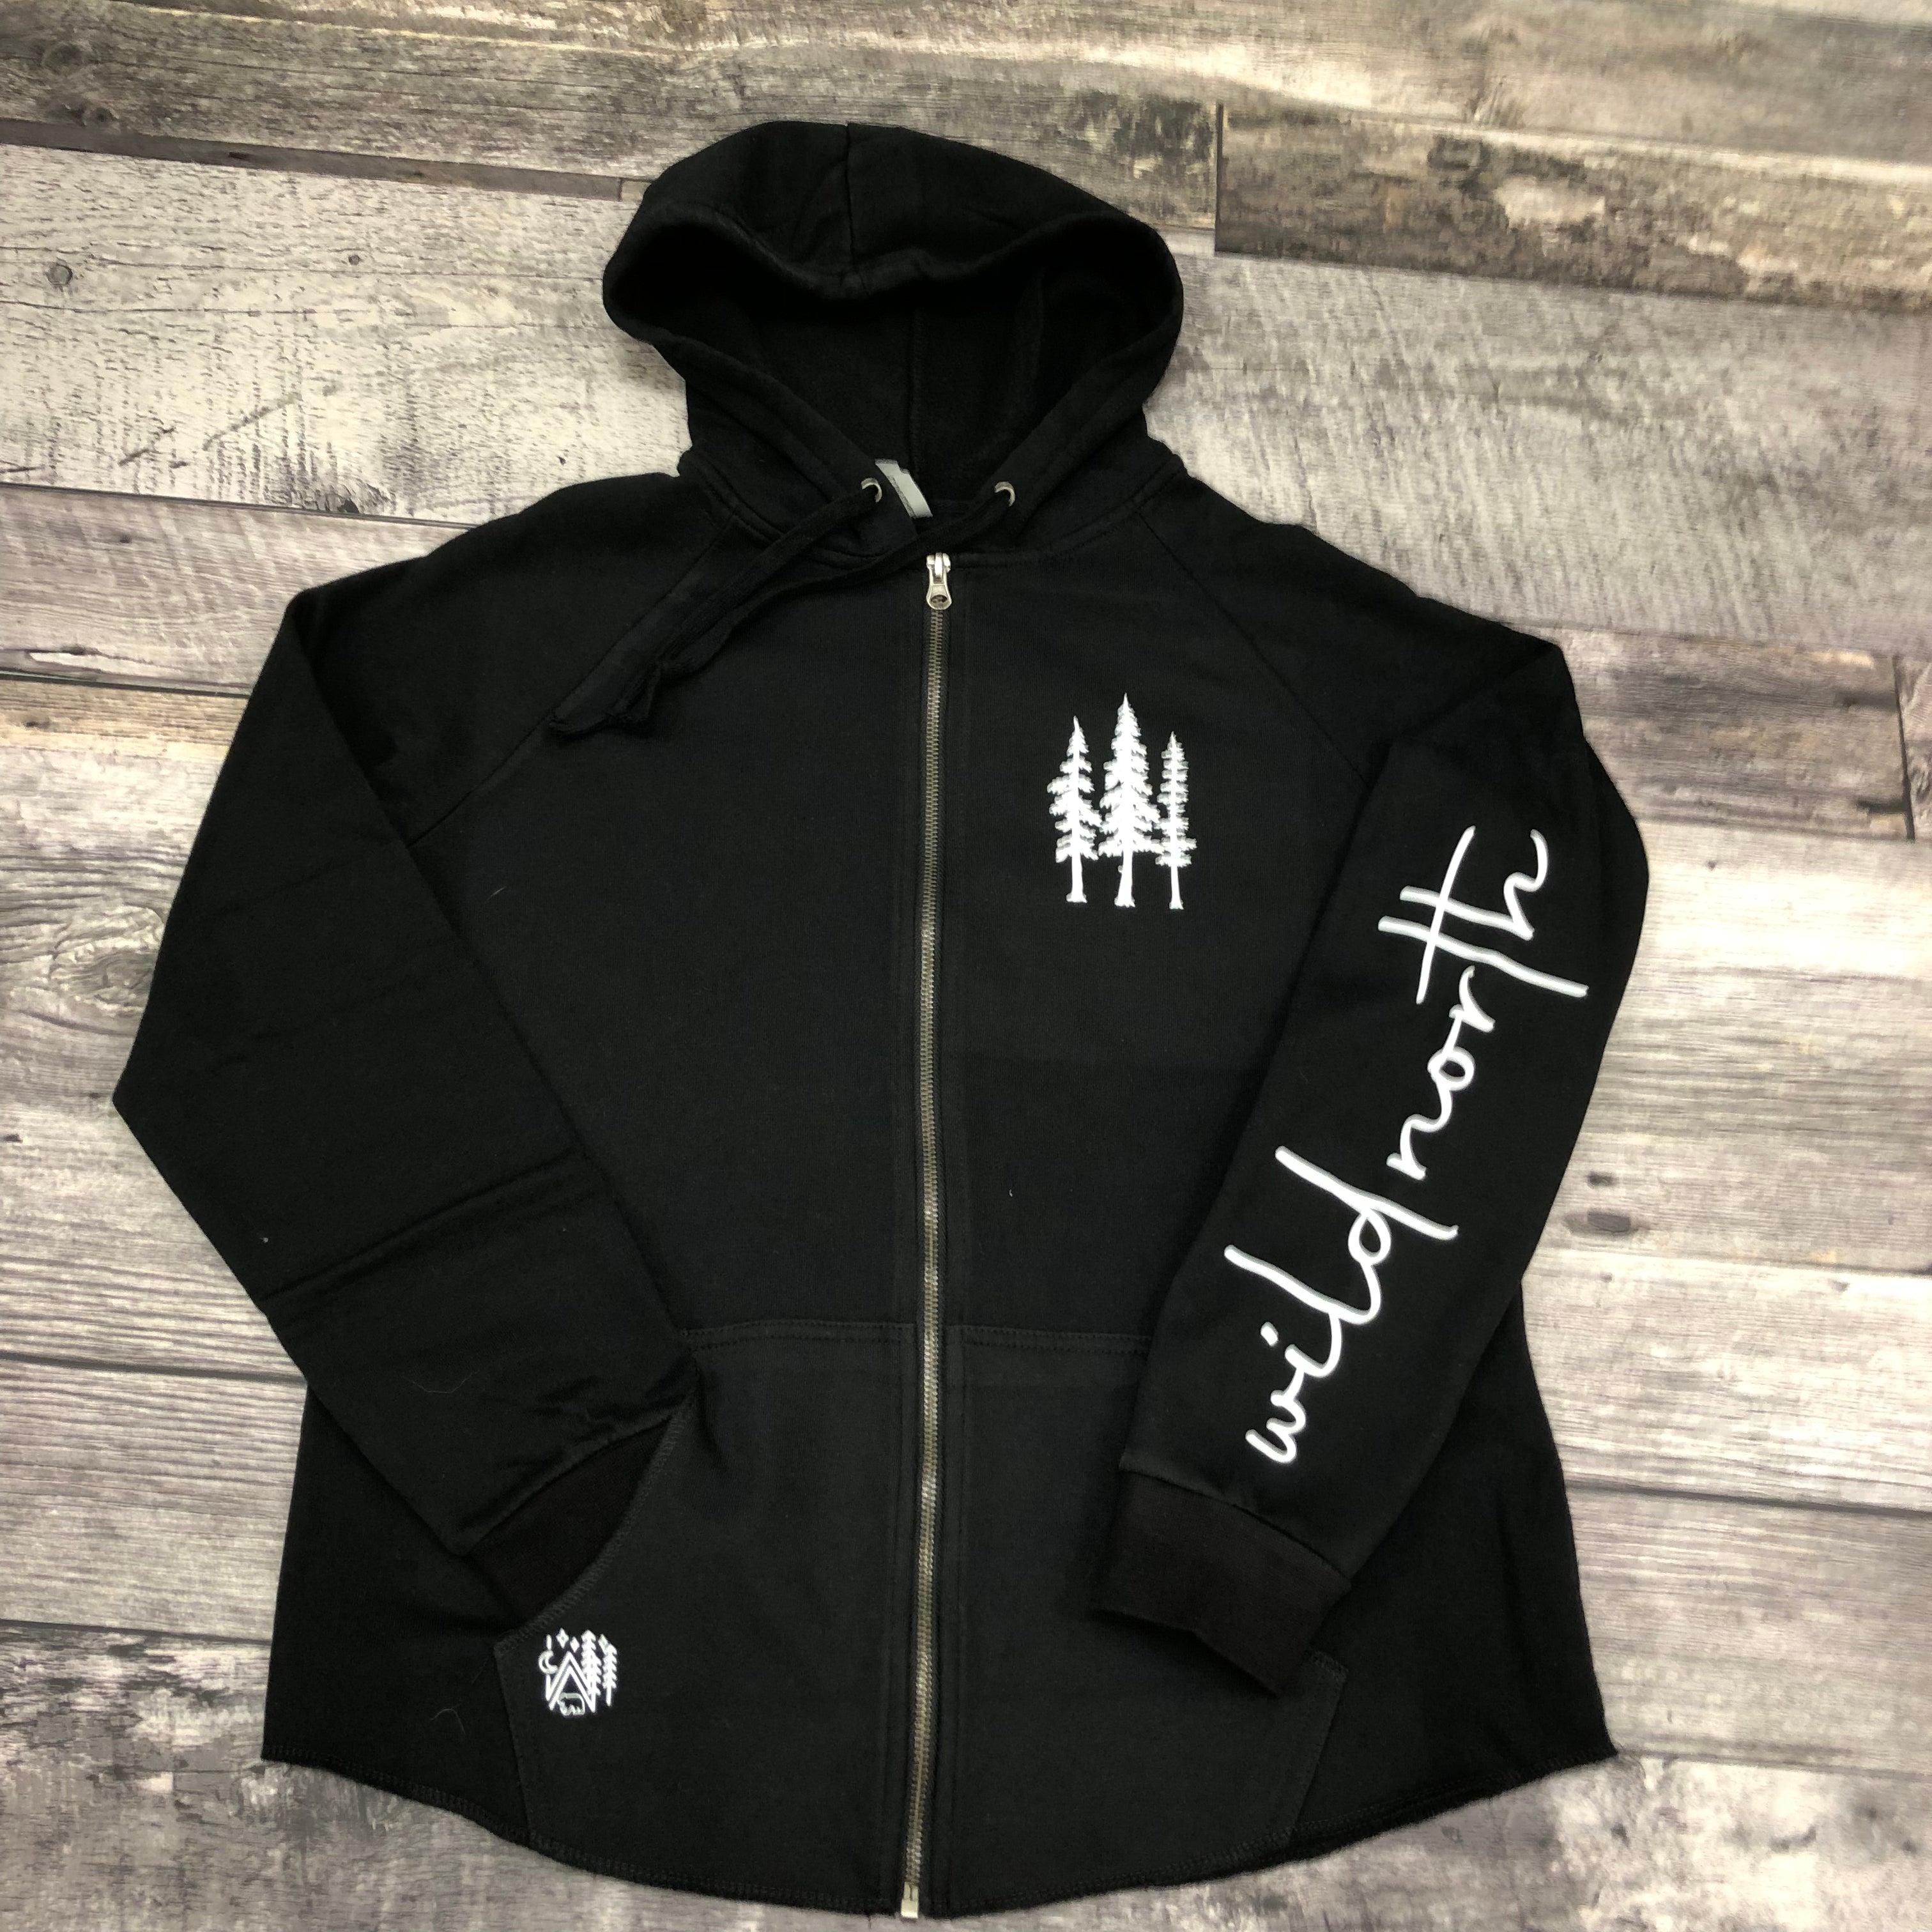 Ladies Full Zip Hooded Jacket - Black